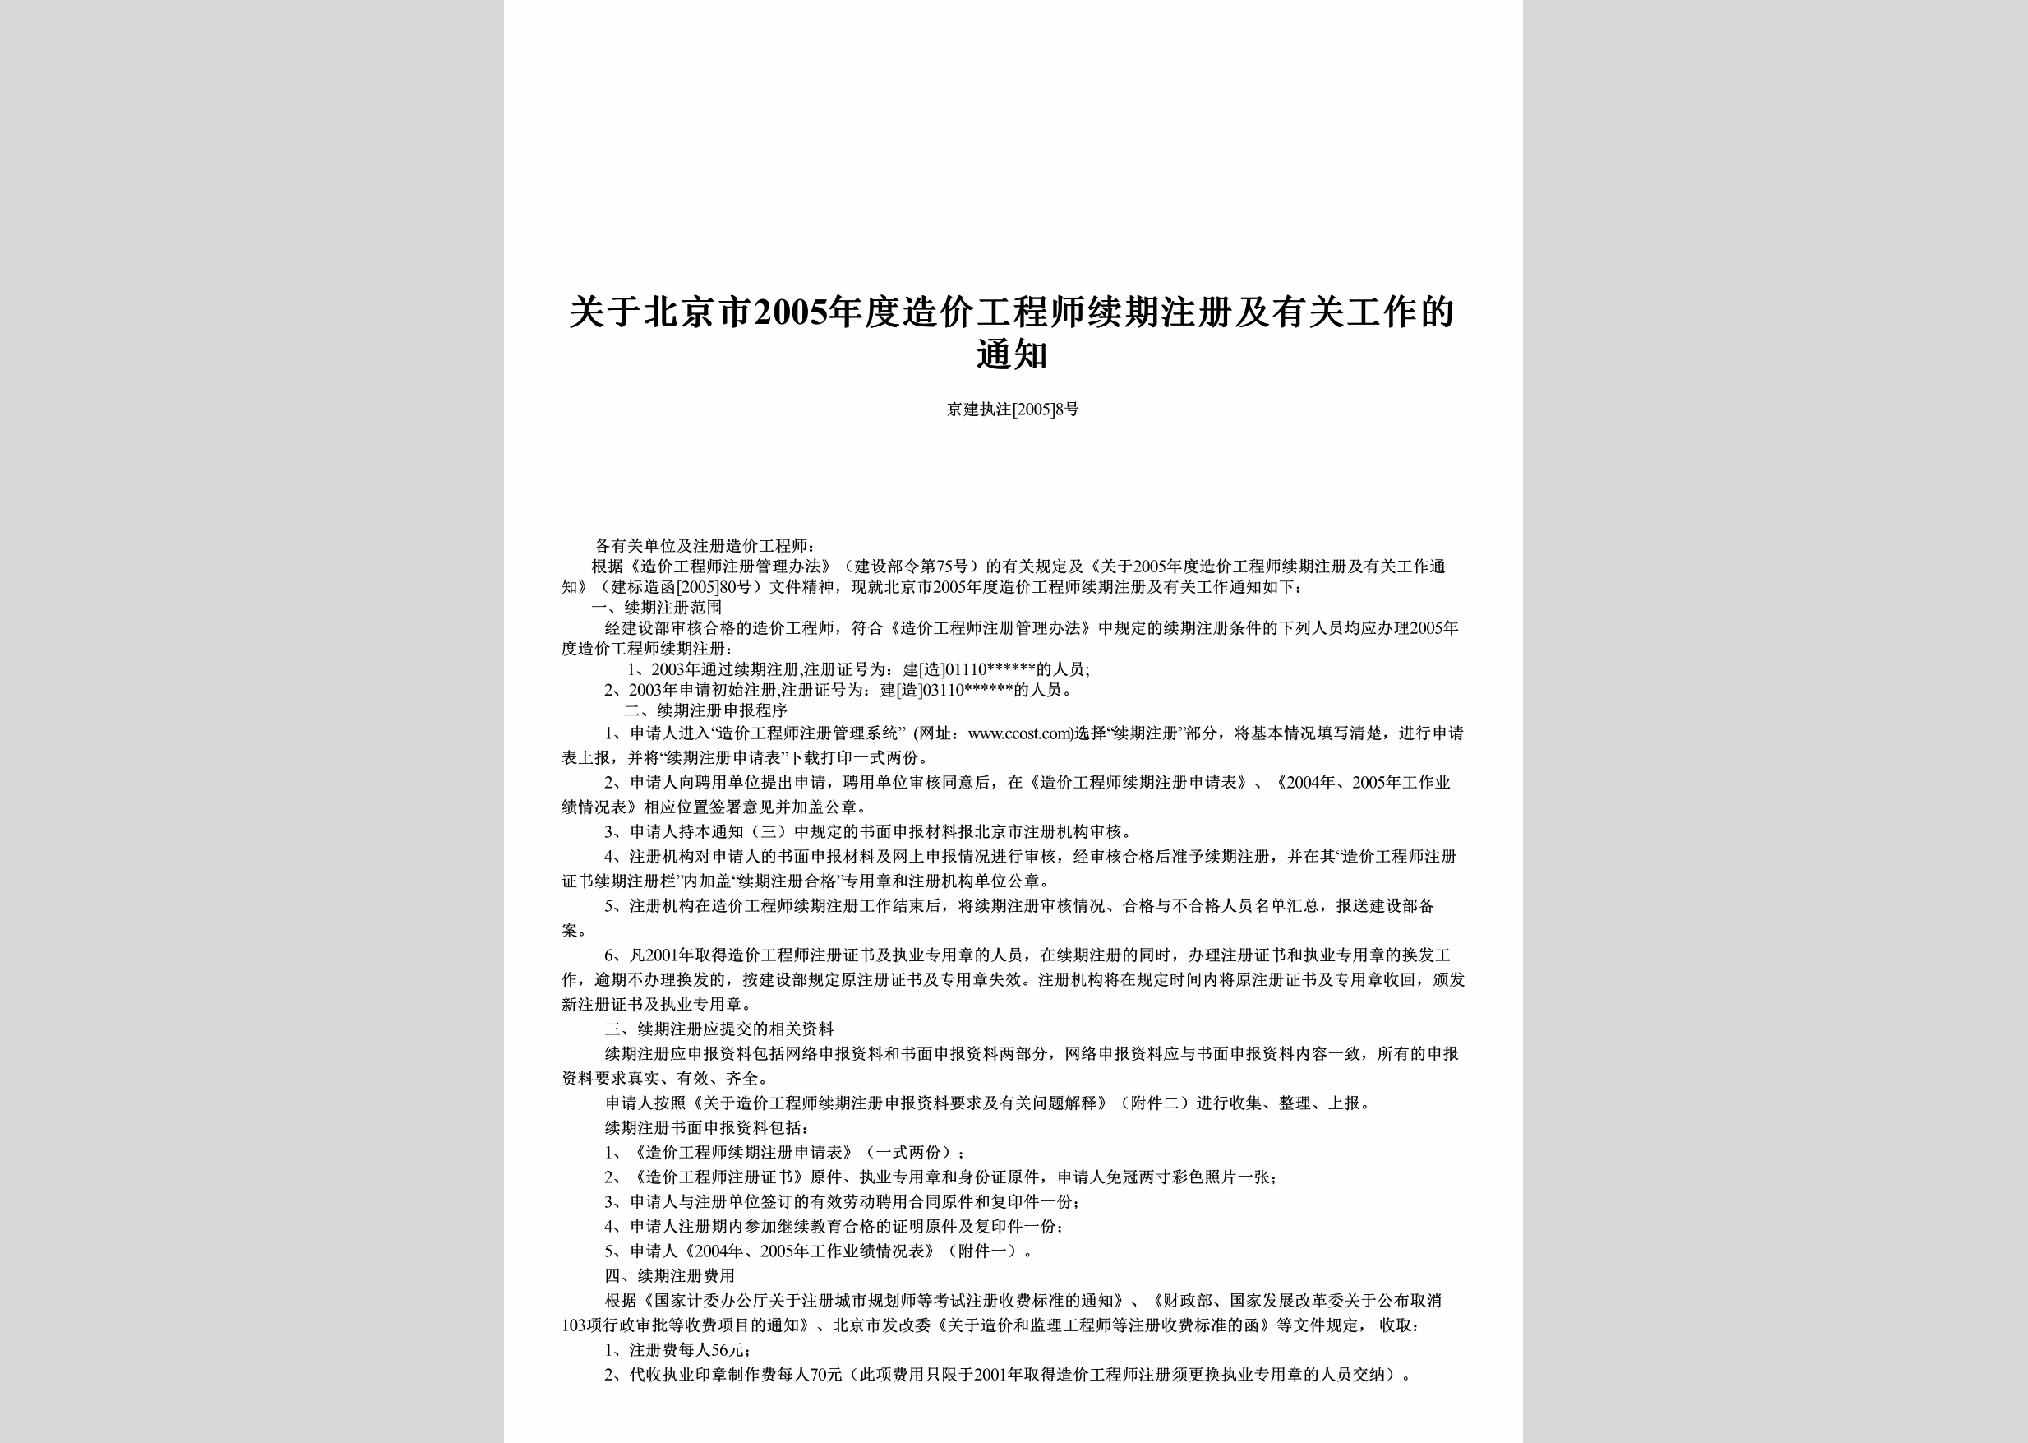 京建执注[2005]8号：关于北京市2005年度造价工程师续期注册及有关工作的通知